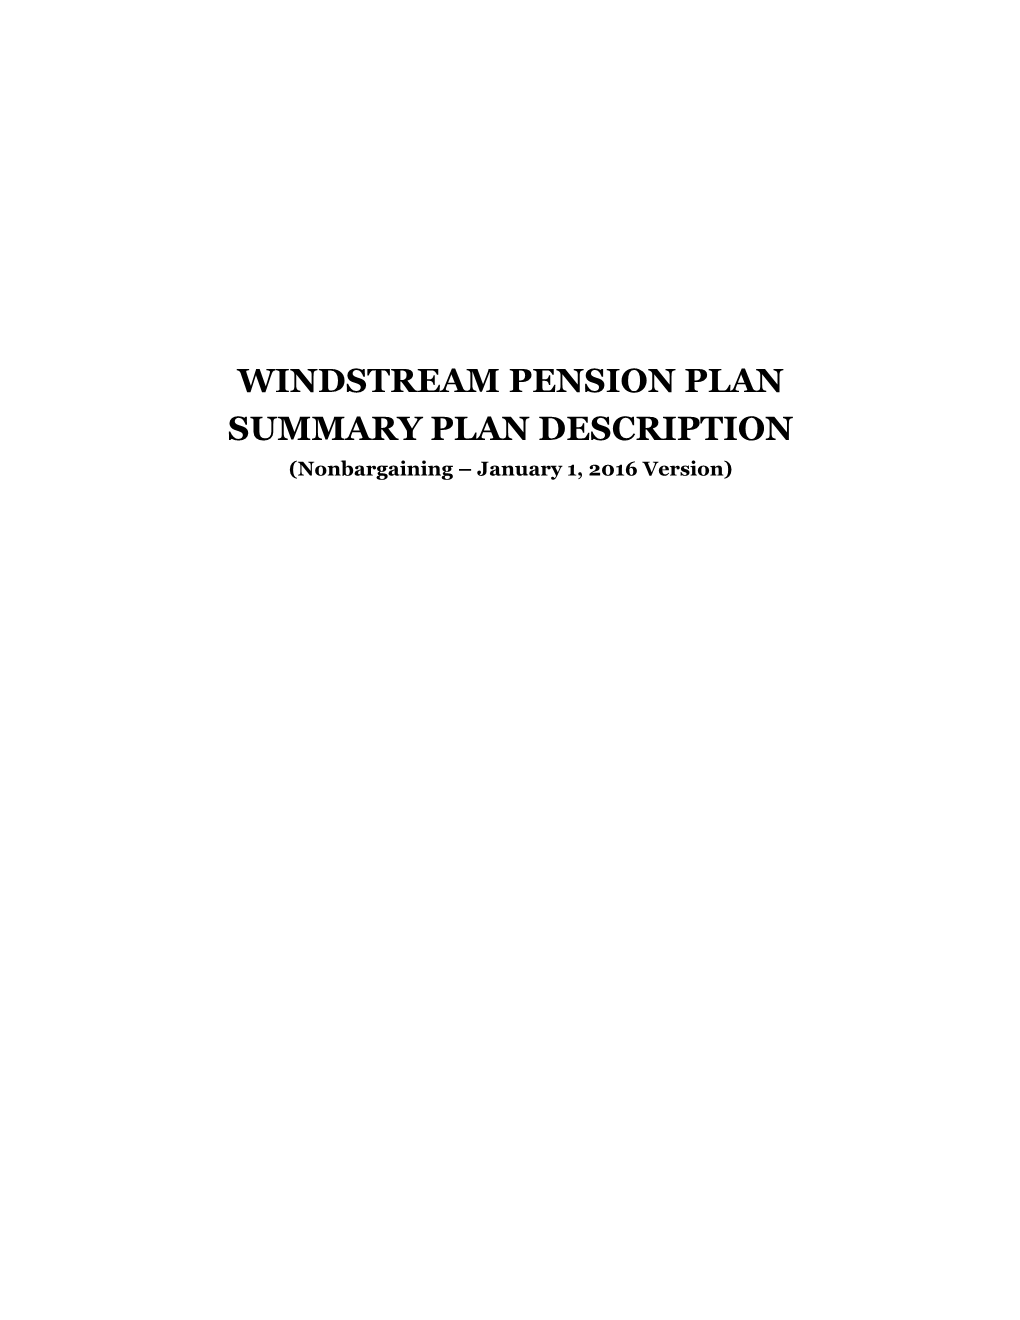 WINDSTREAM PENSION PLAN SUMMARY PLAN DESCRIPTION (Nonbargaining – January 1, 2016 Version)